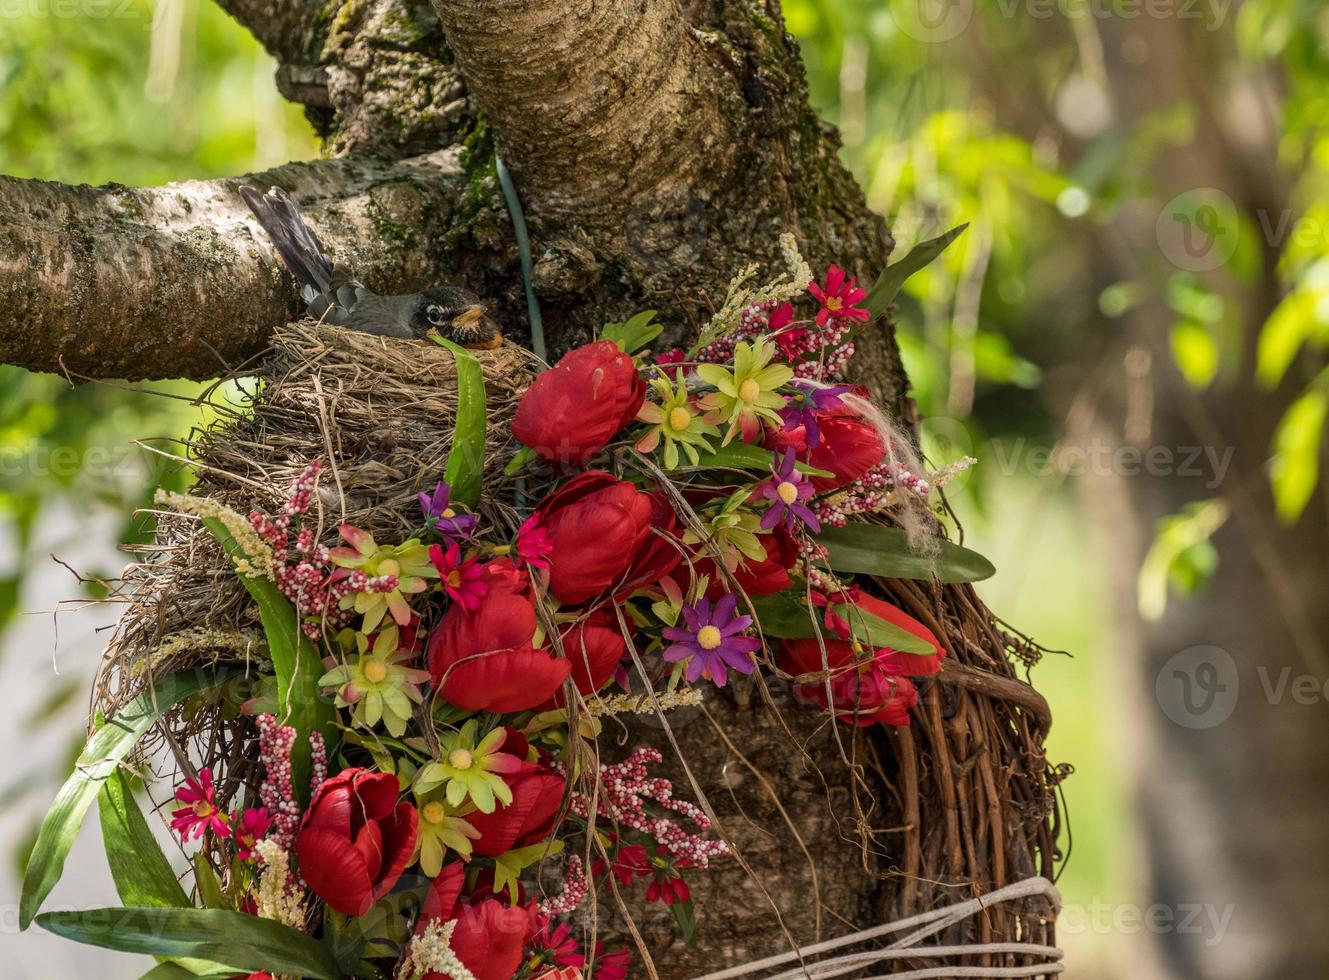 robin americano em um ninho construído em uma coroa de flores foto